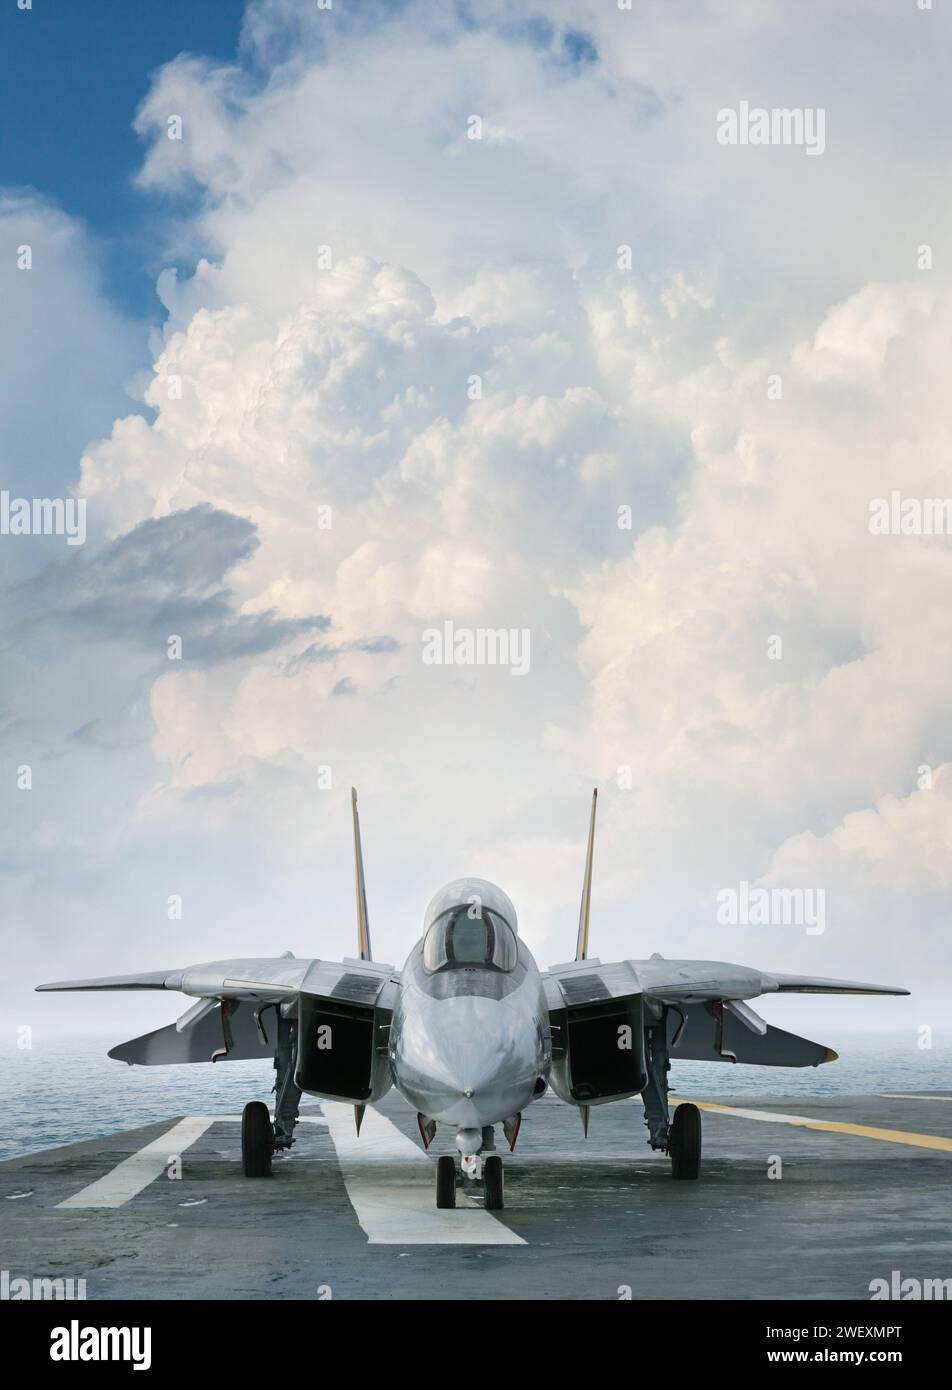 Ein F-14-Jäger auf einem Flugzeugträger-Deck unter dramatischen Wolken von vorne gesehen Stockfoto